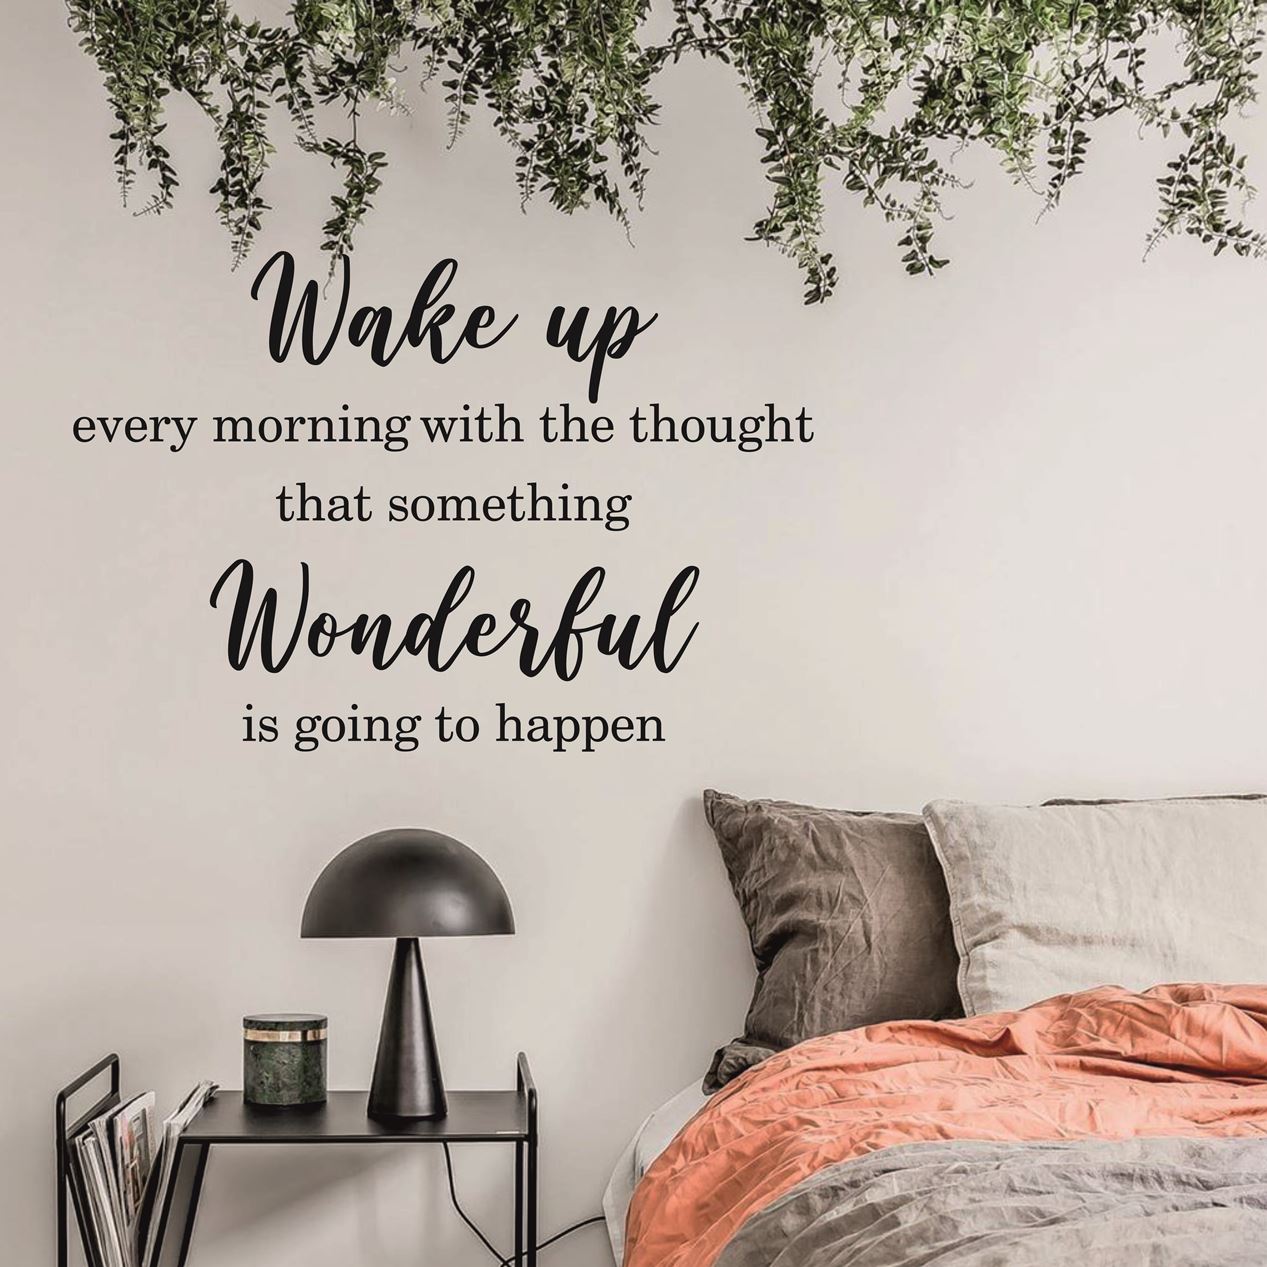 تابلو دیواری ایده دکوری برای ایجاد انگیزه صبحگاهی تابلو بالای تخت خواب wake up